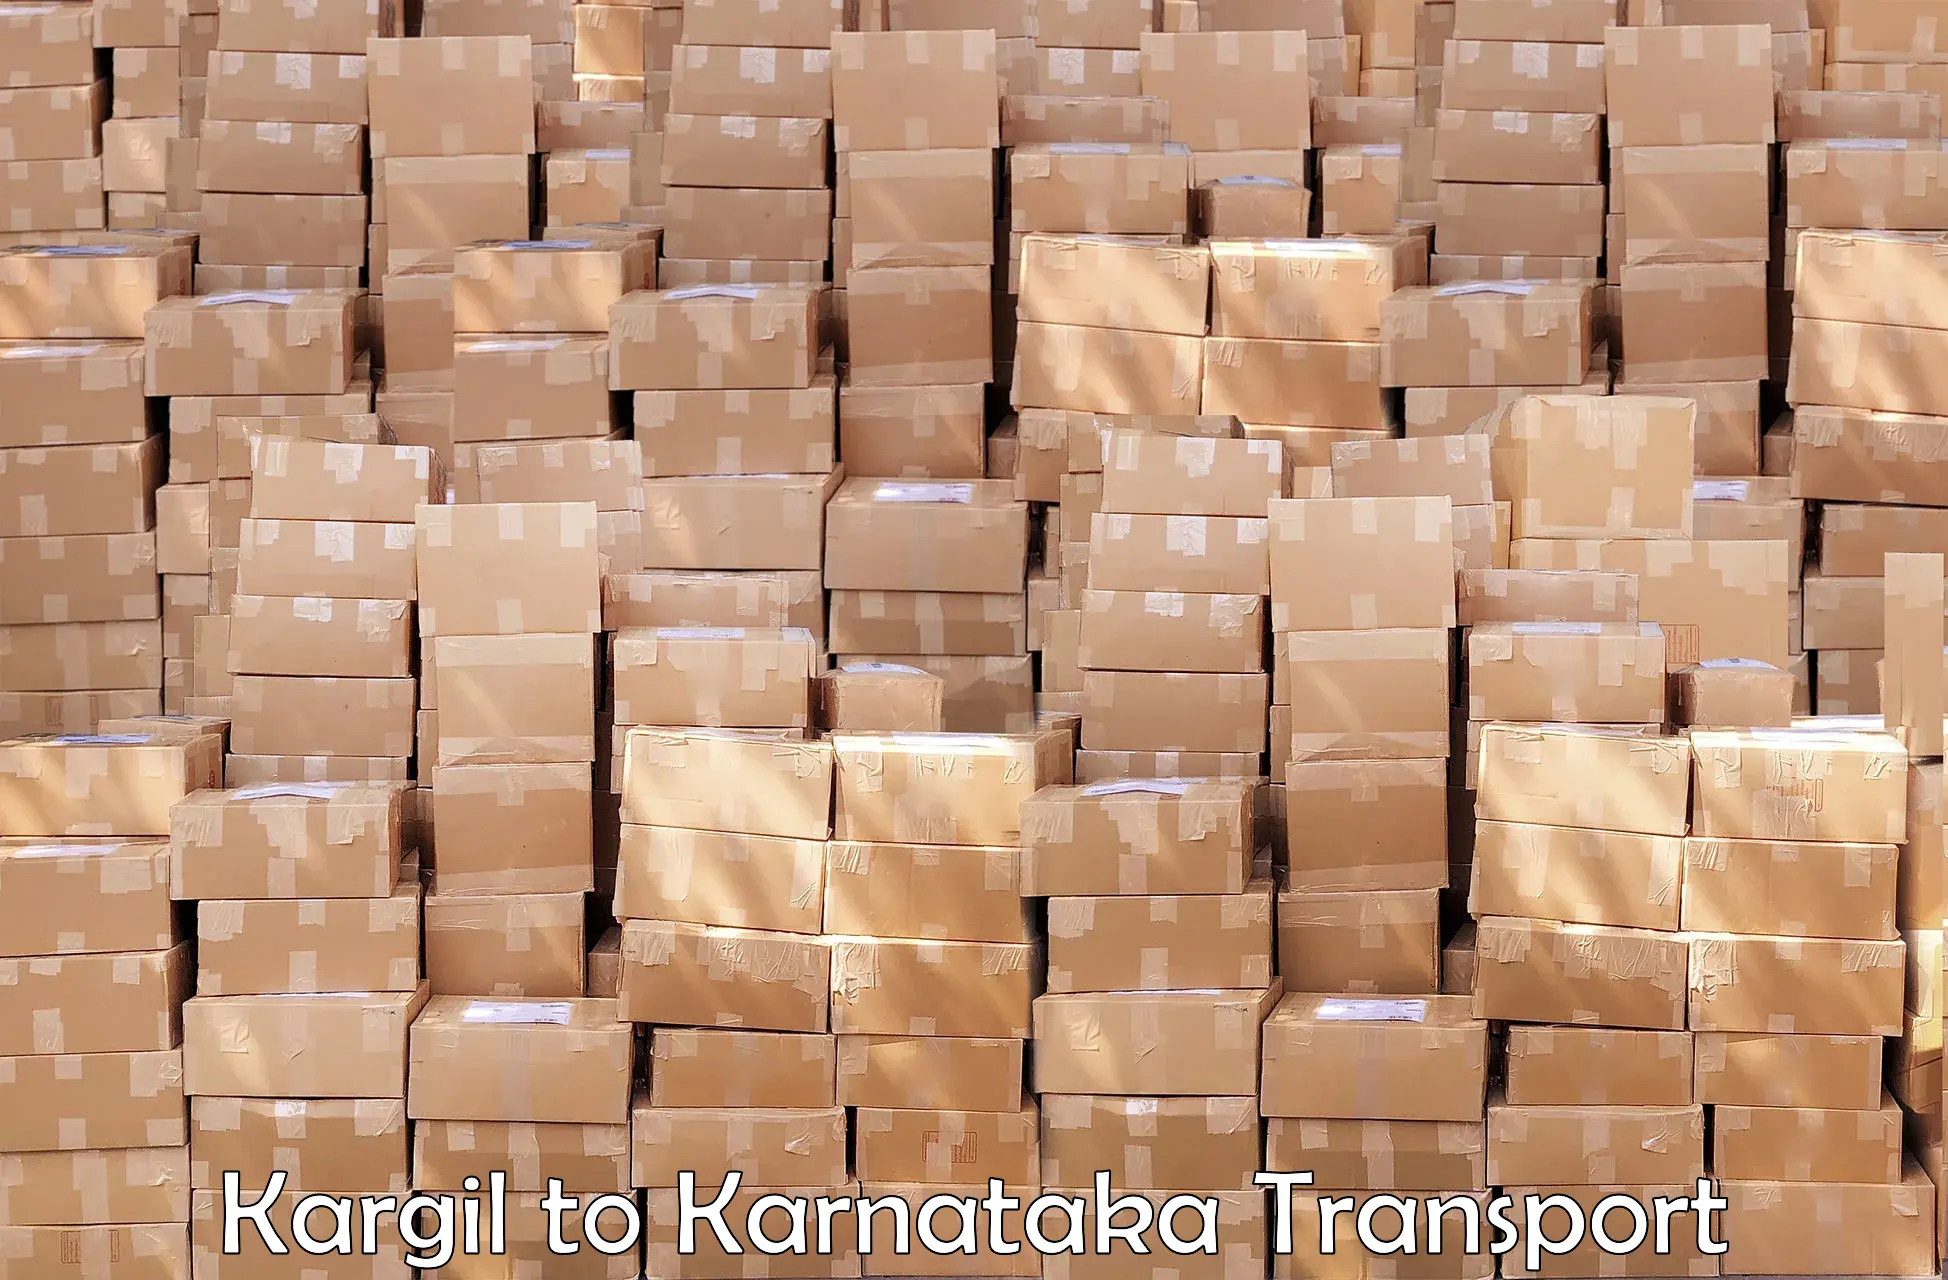 Goods delivery service Kargil to Hukkeri